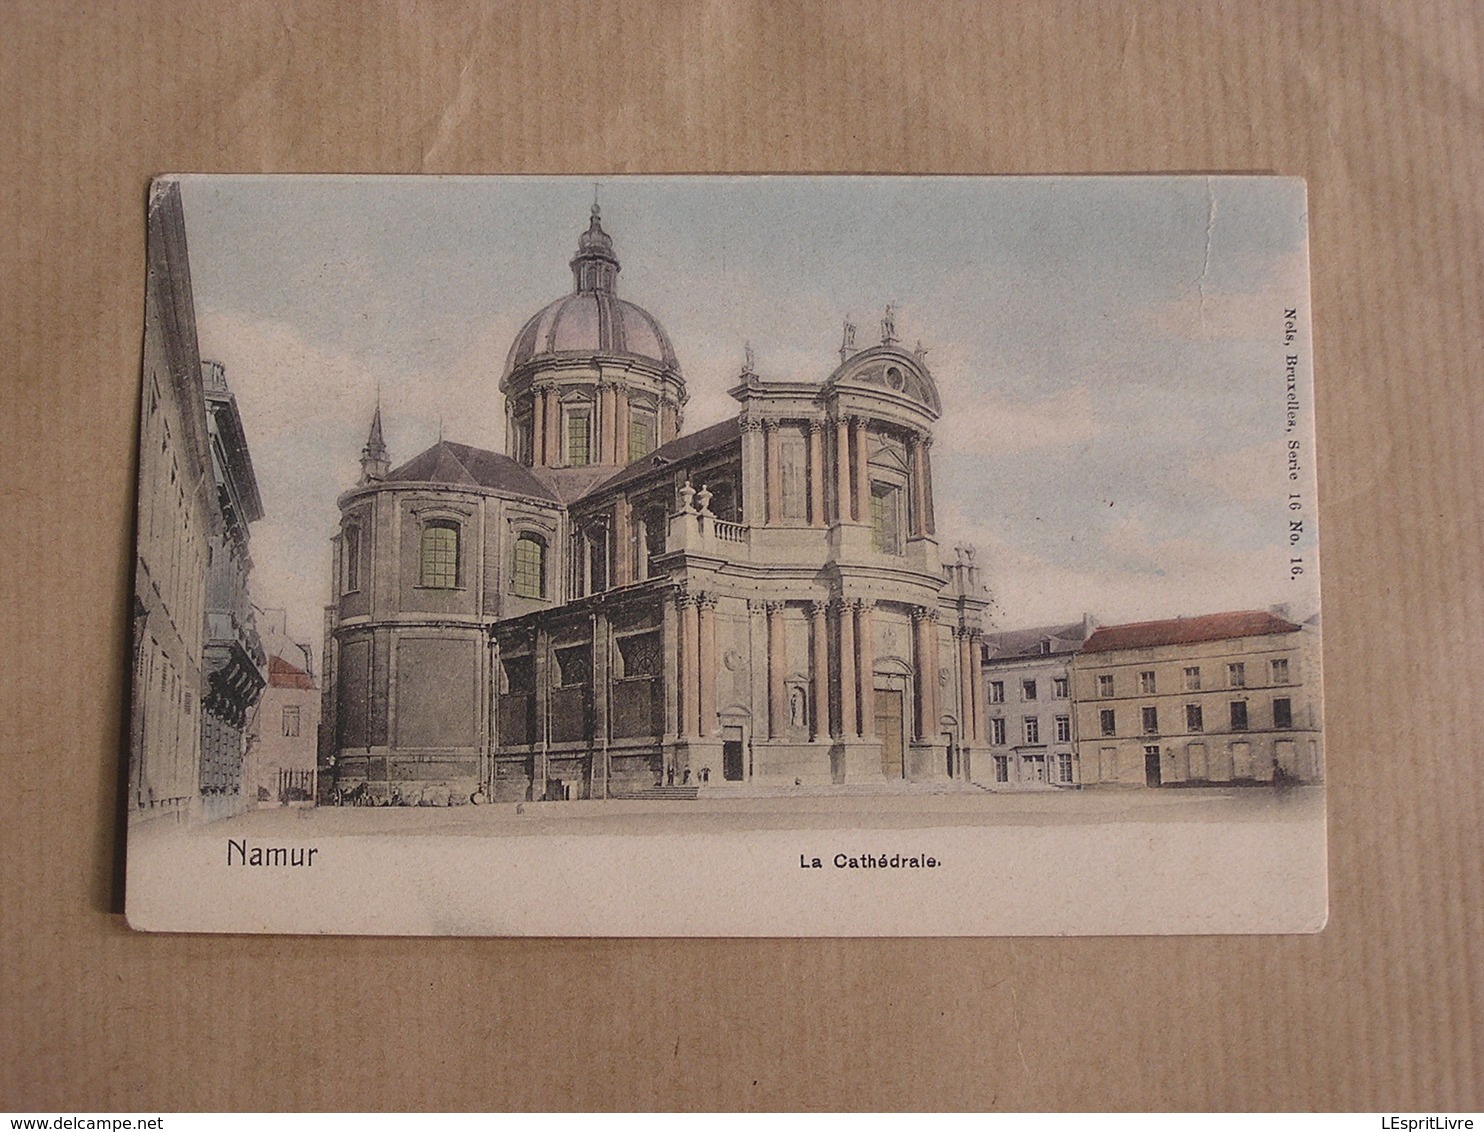 NAMUR La Cathédrale Province Namur België Belgique Carte Postale Postcard - Namur